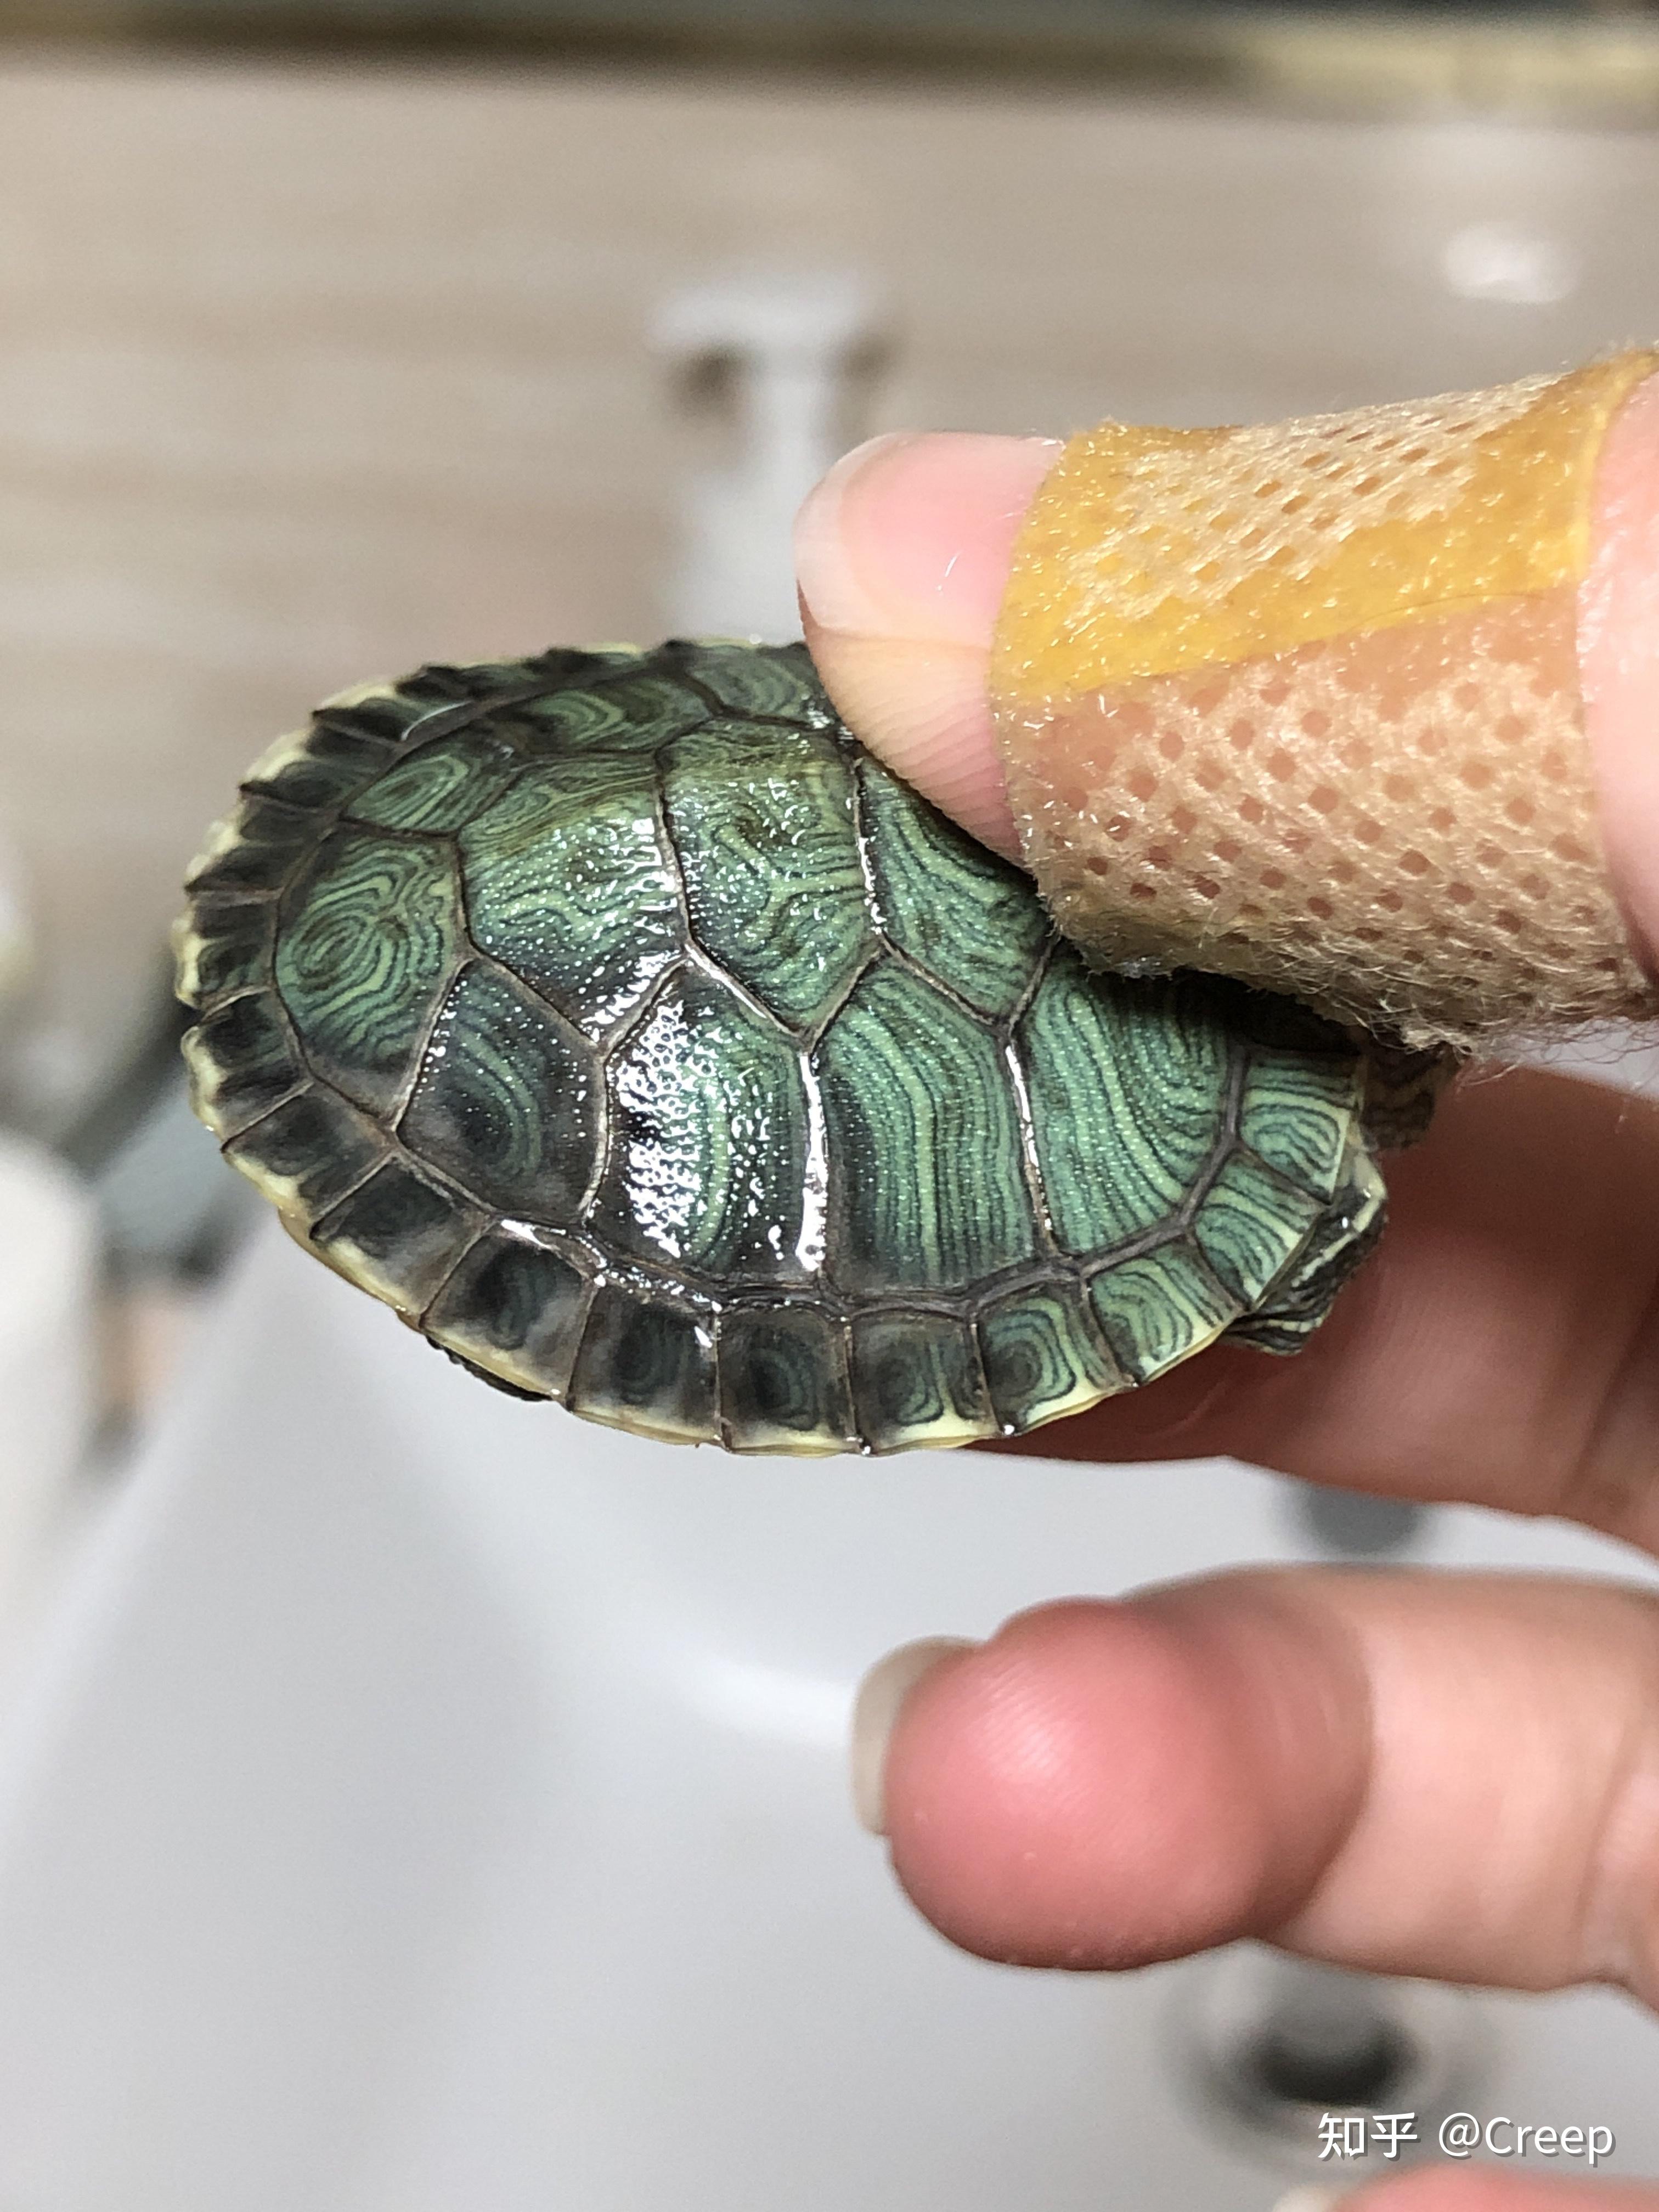 巴西龟的生长纹图片